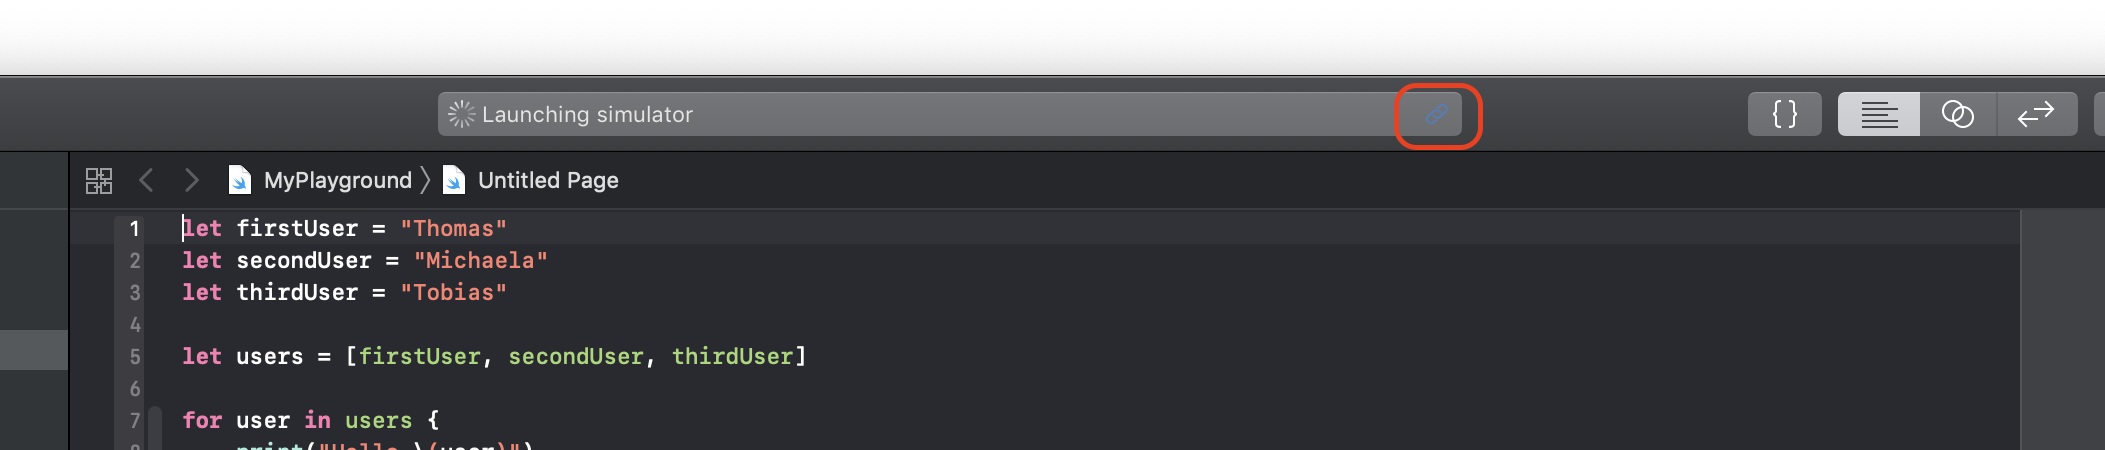 Ist eine andere als die Standard-Toolchain in den Xcode-Einstellungen ausgewählt, zeigt die Toolbar ein entsprechendes Symbol an.